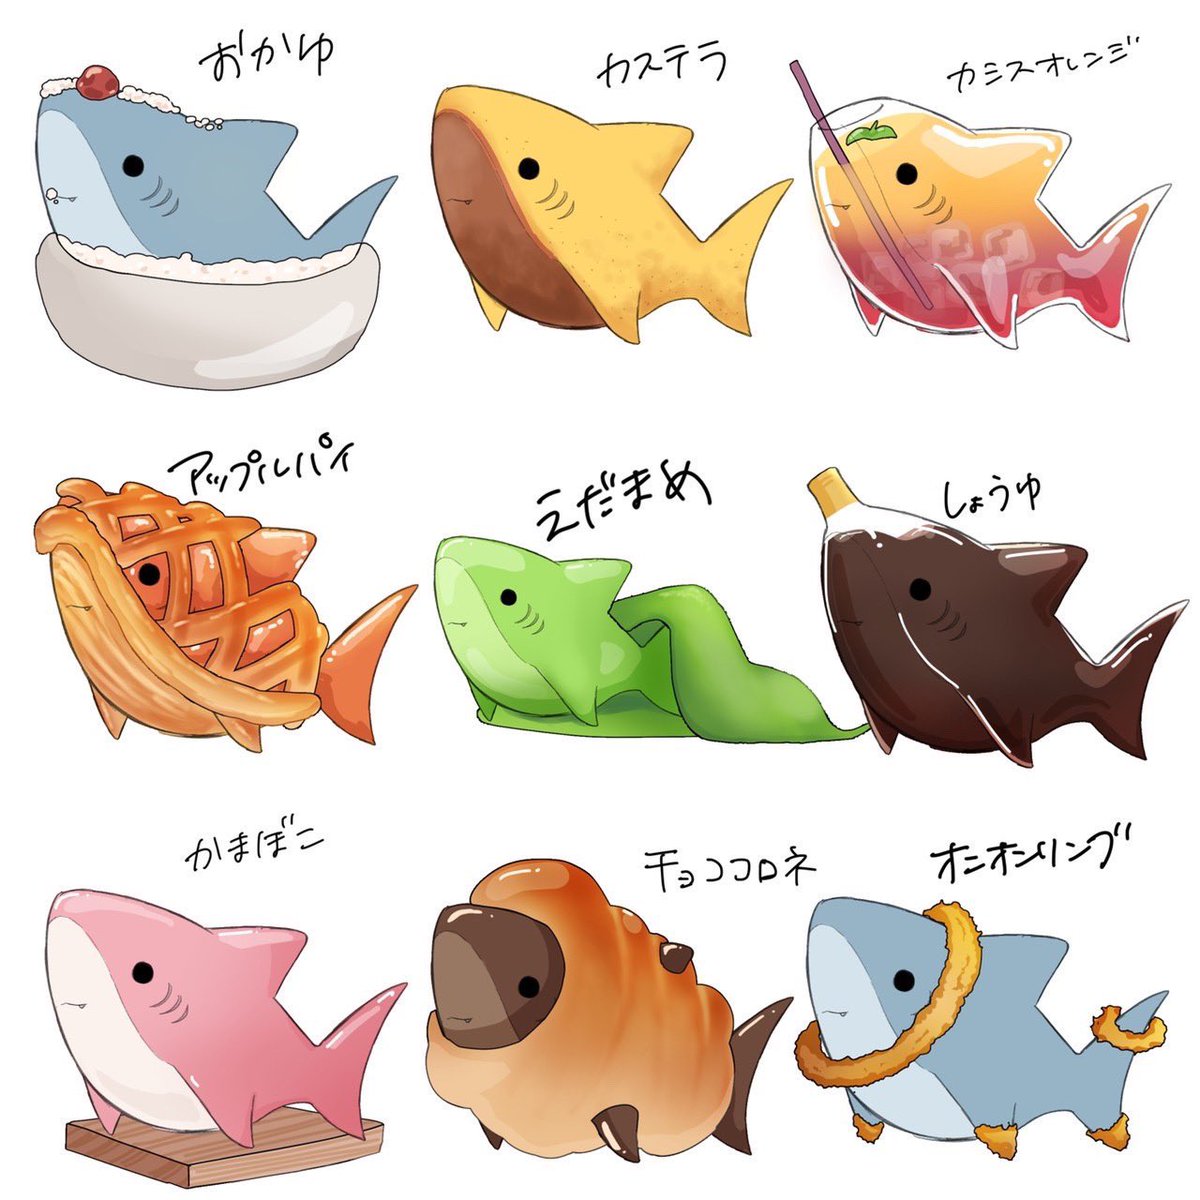 『食べ物×サメ』まとめ 